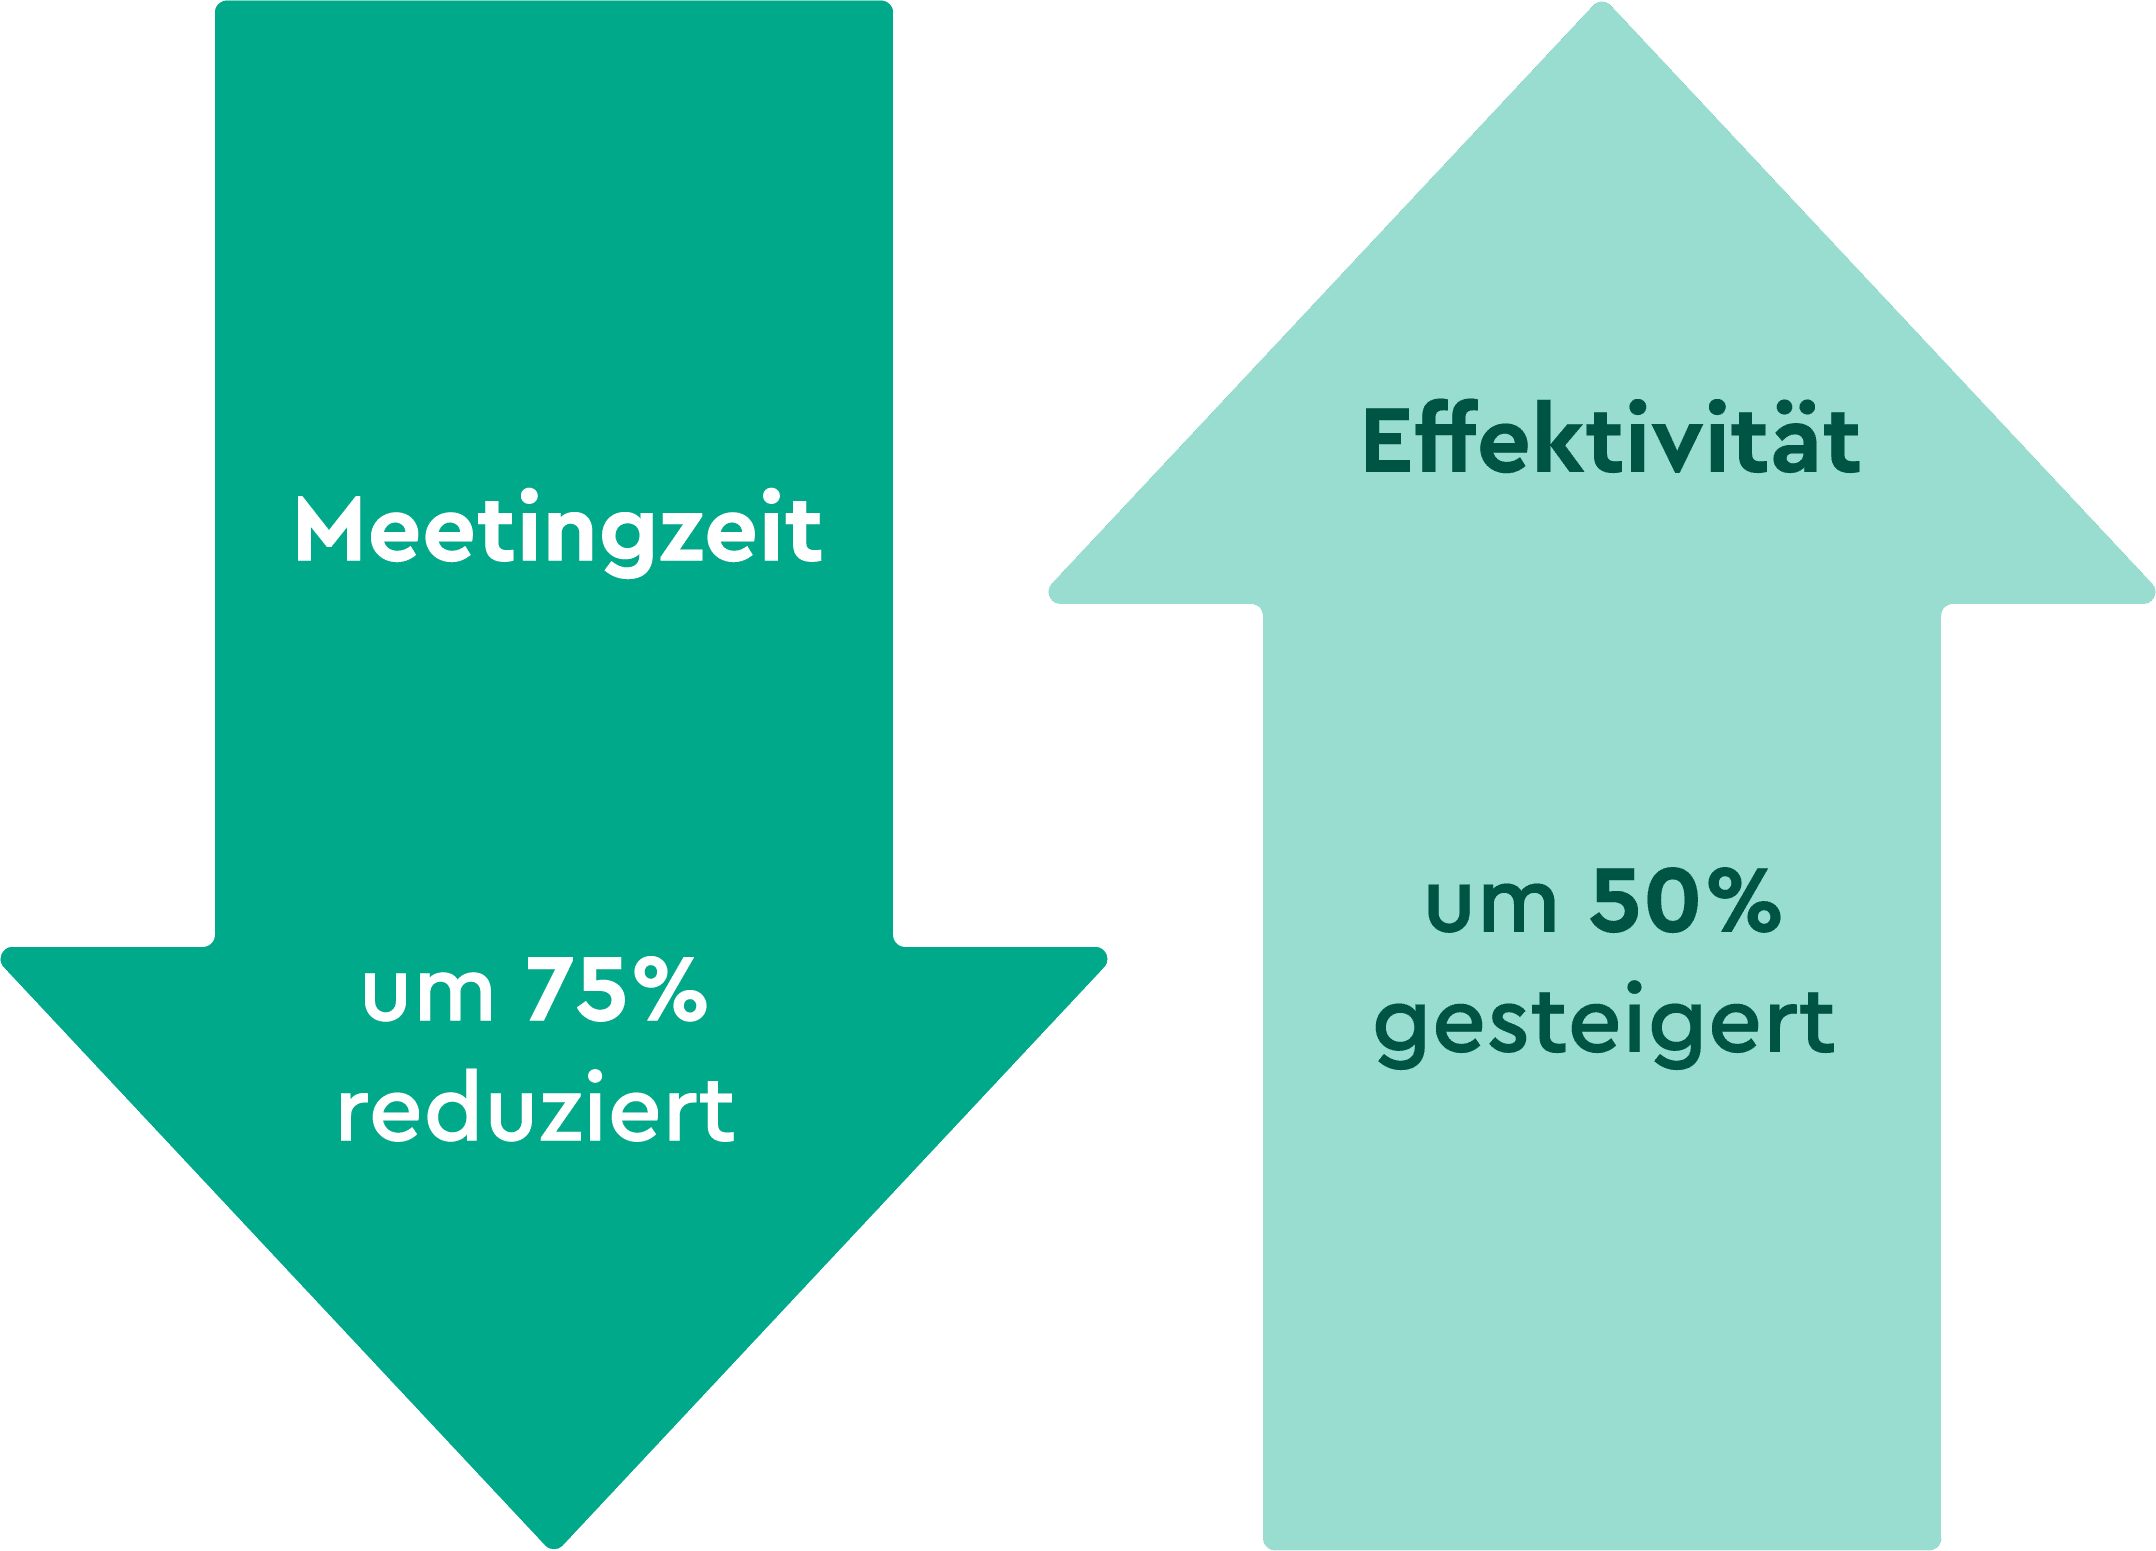 Zwei entgegengesetzte Pfeile: Auf dem einen steht "Meetingszeit um 75% reduziert. "Auf dem anderen "Effektivität um 50% gesteigert."